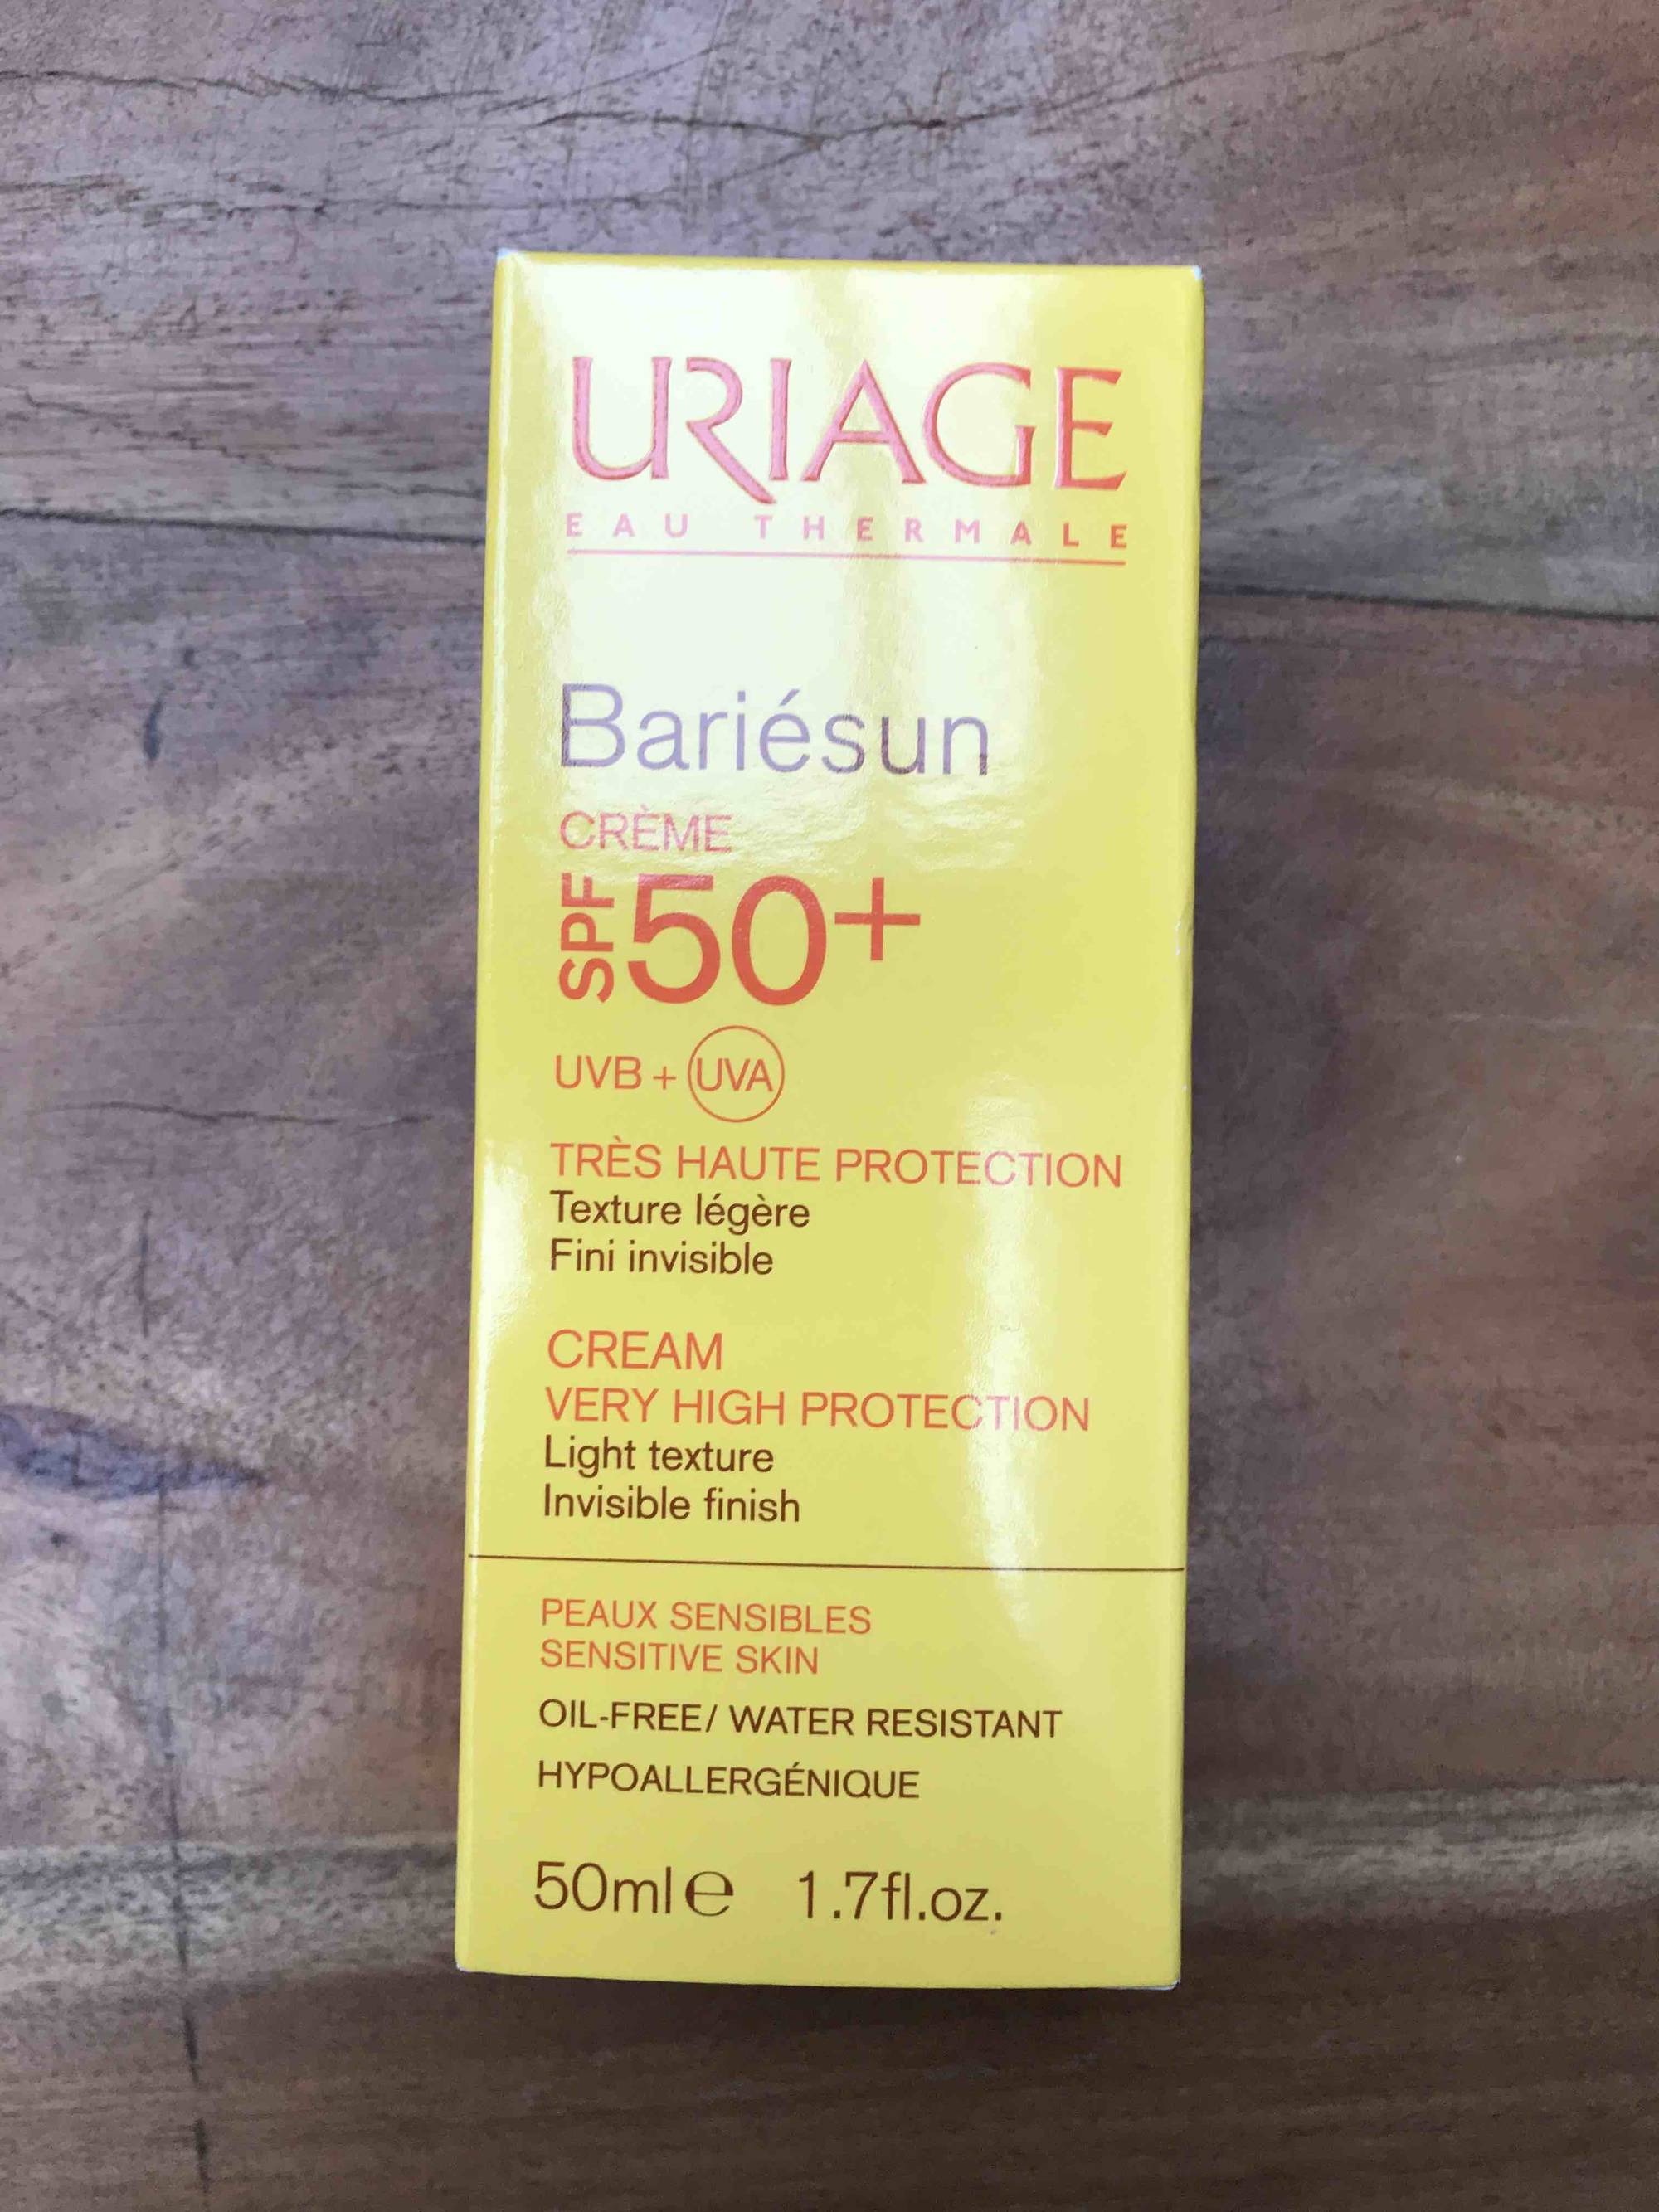 URIAGE - Bariésun crème très haute protection SPF 50+ 